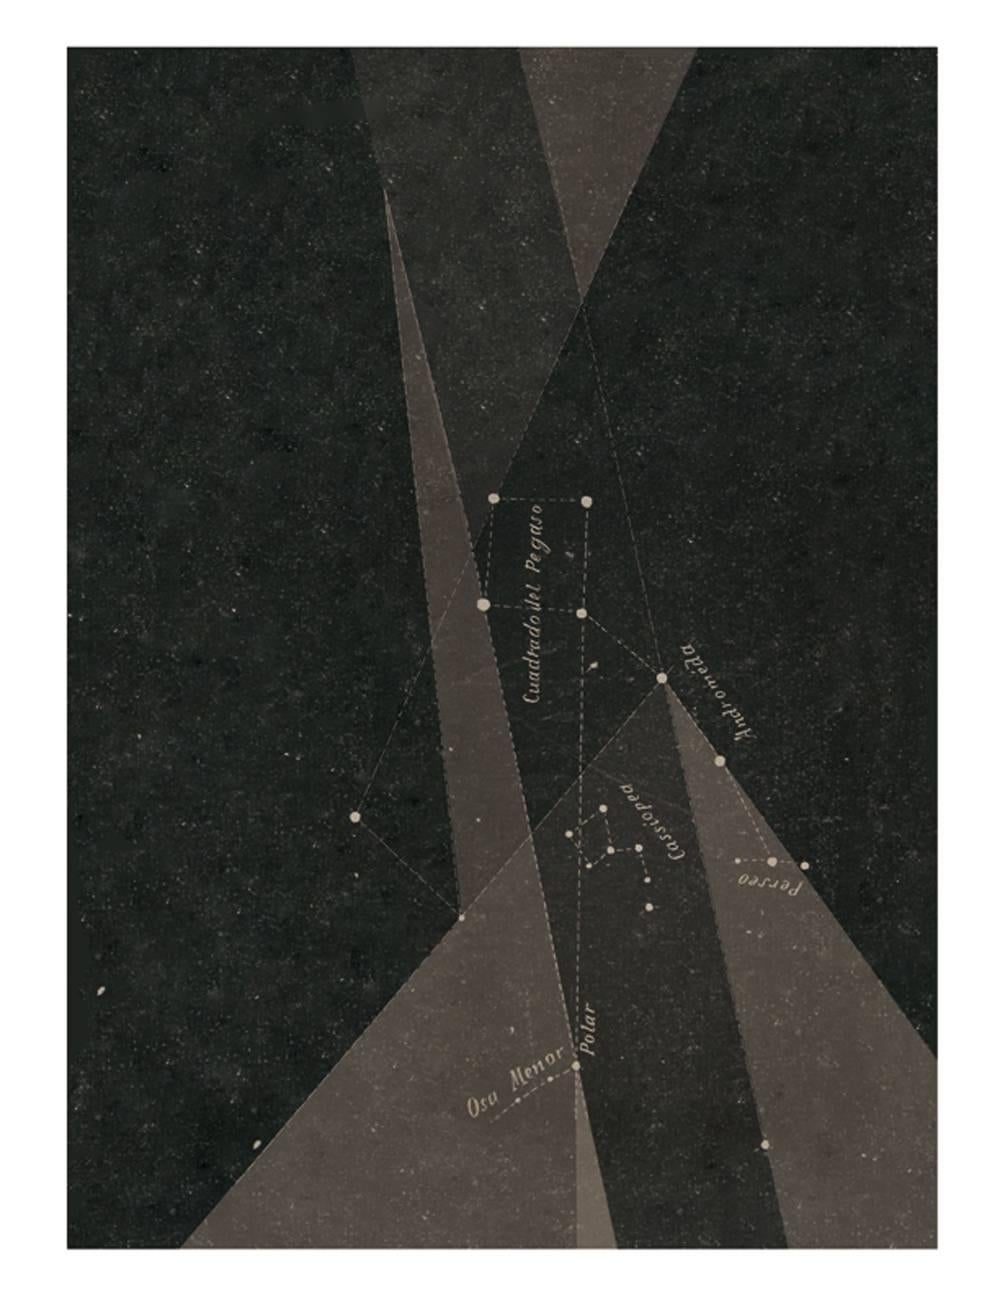 Jaime Colín  Print - Ficción Astronómica 1